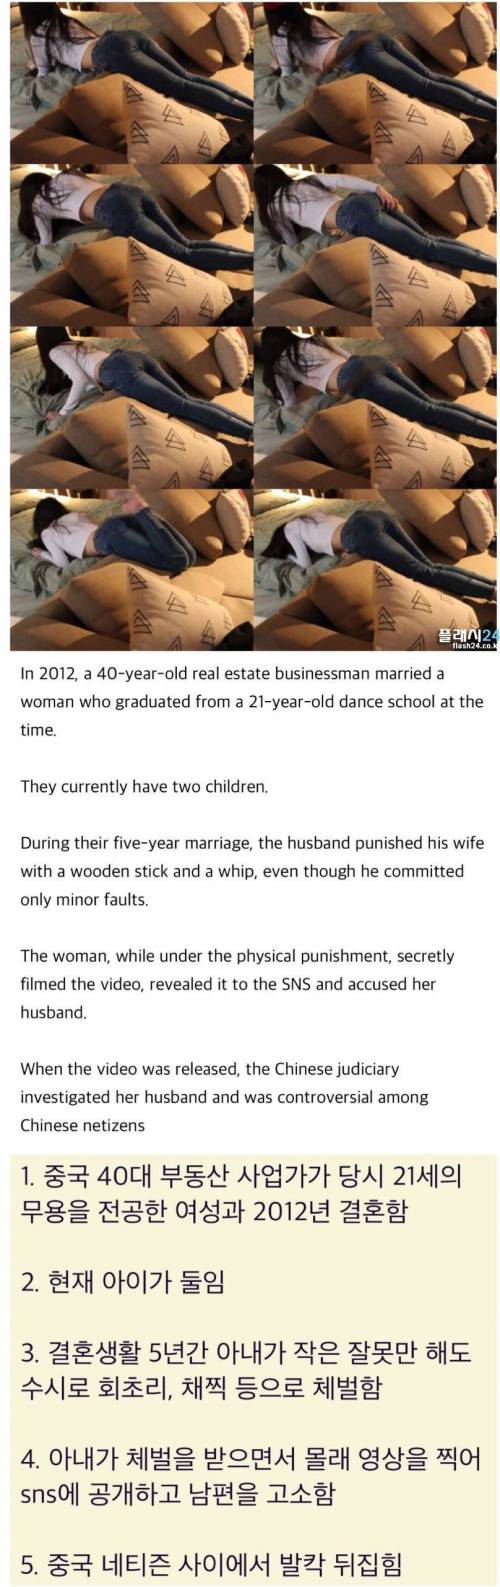 현재 중국에서 난리난 아내 체벌 사건